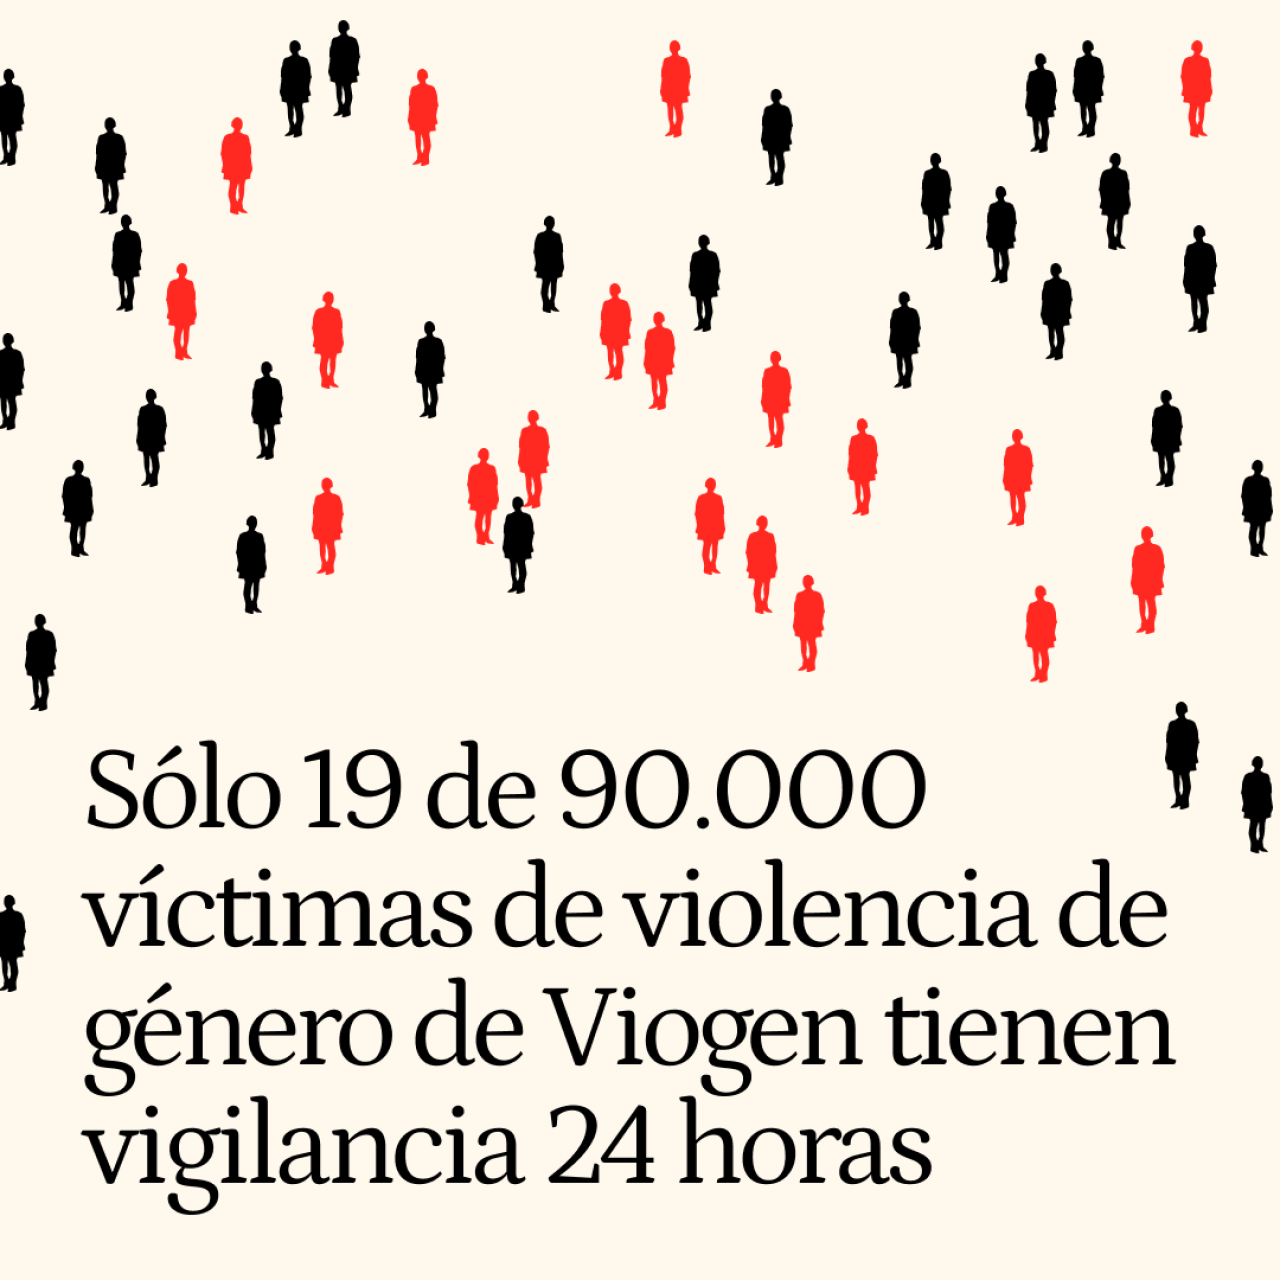 Sólo 19 de 90.000 víctimas de violencia de género registradas en Viogen tienen vigilancia 24 horas